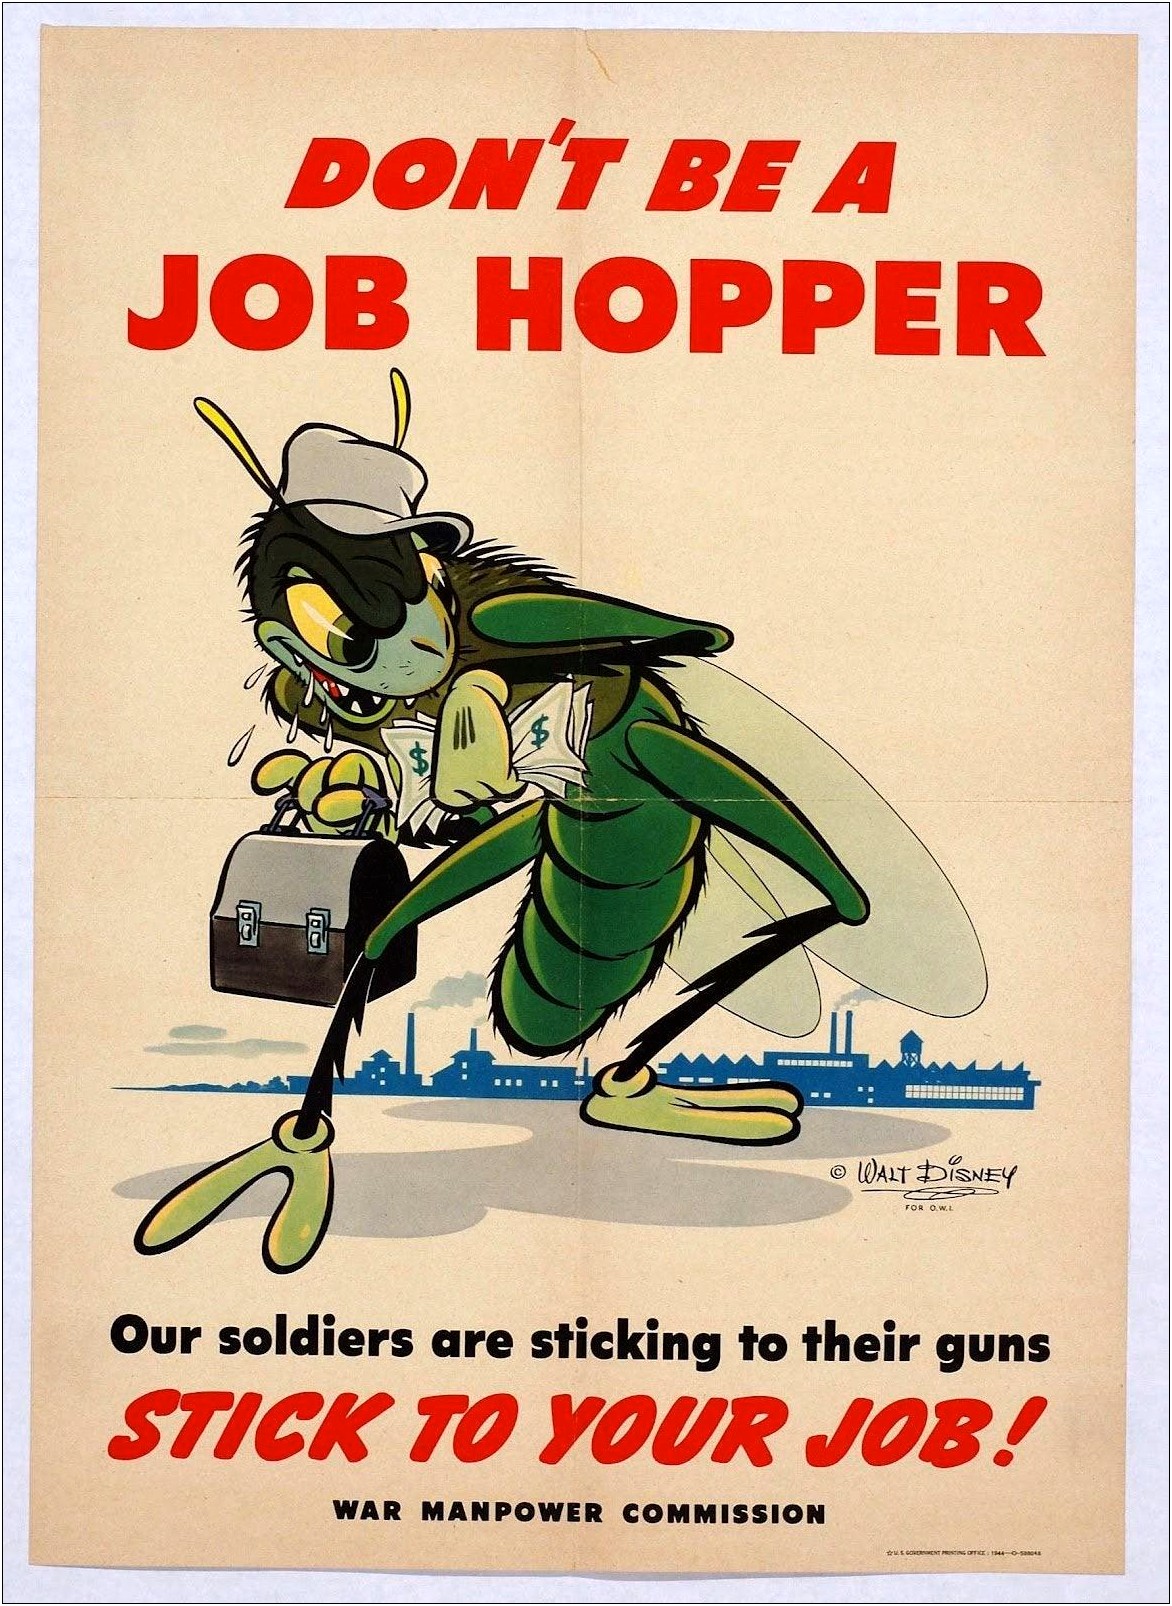 General Resume Summary For Job Hopper